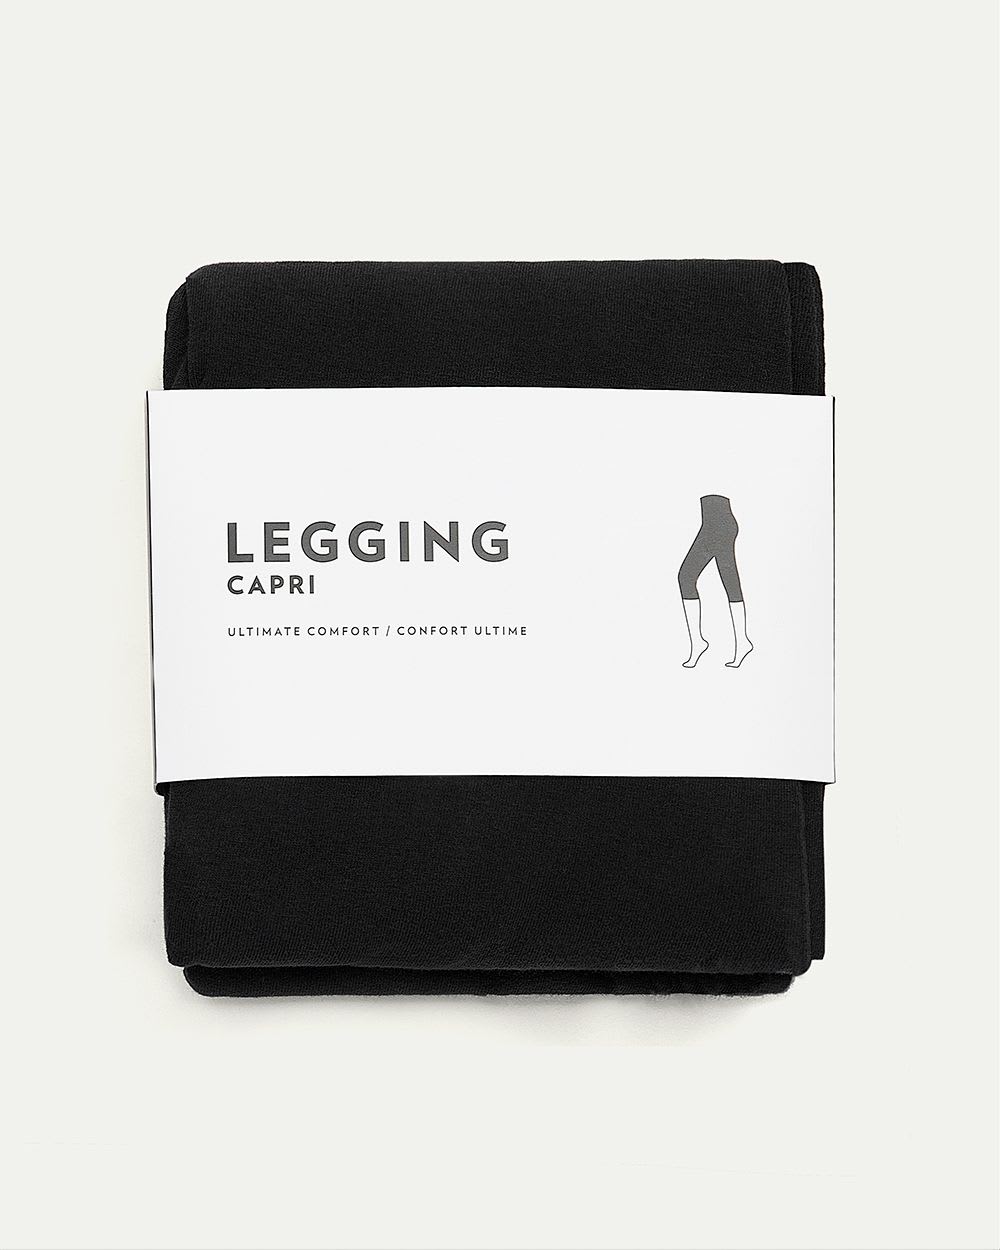 Cotton Capri Legging with Lace Up Details